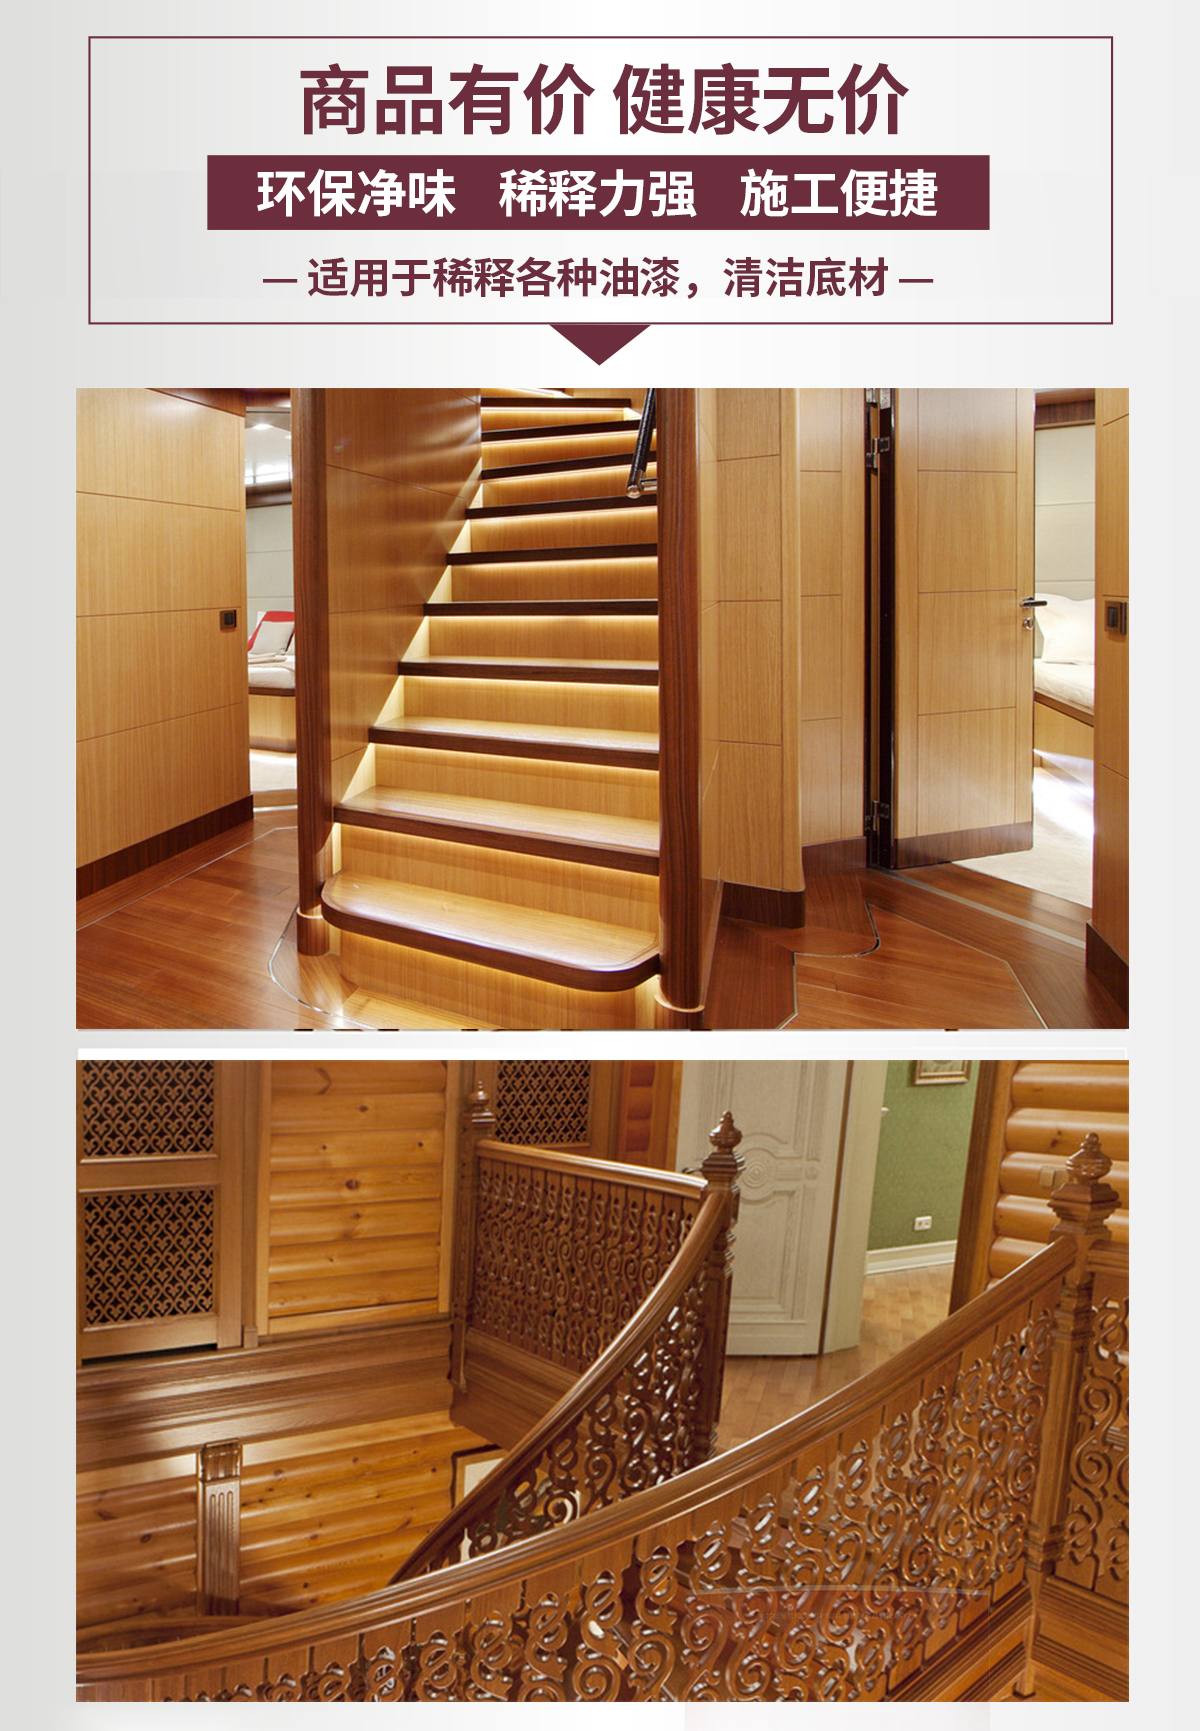 米妮高档楼梯系列家具漆-长图详情页_11.jpg